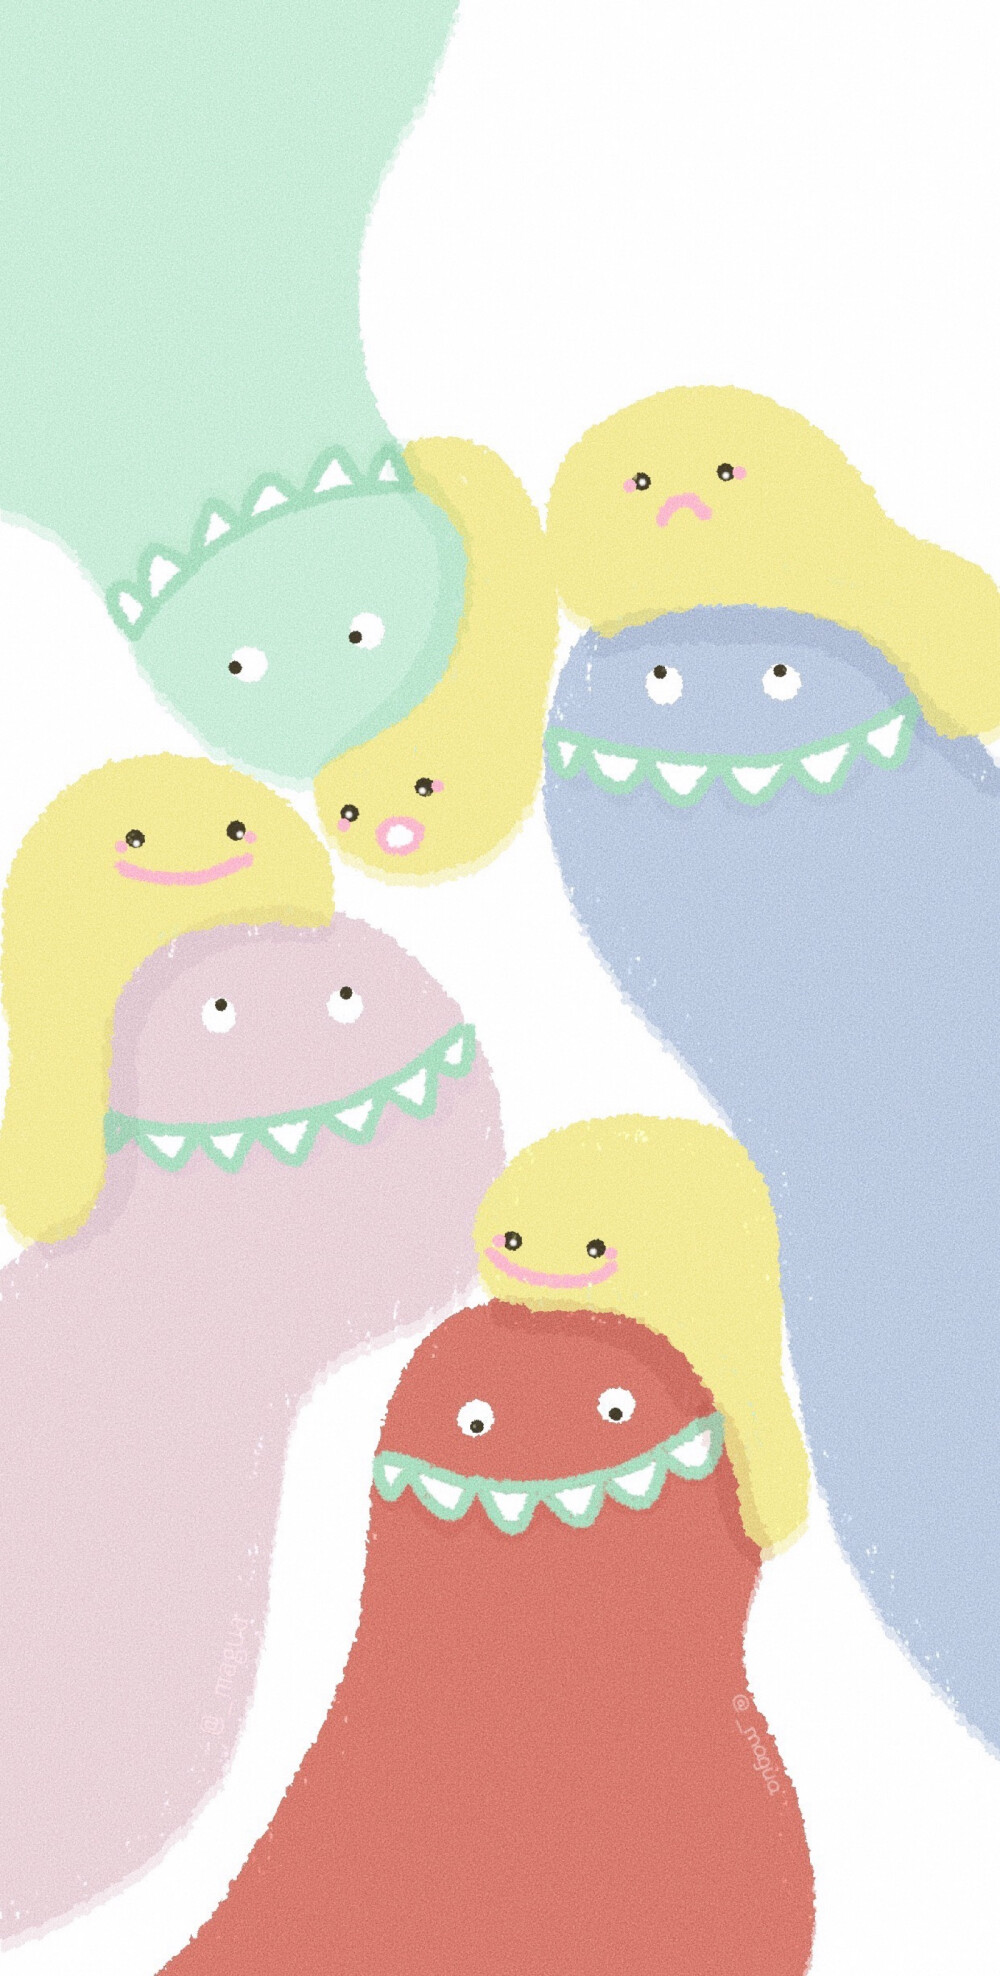 画的一组小恐龙和小怪兽壁纸微博magua